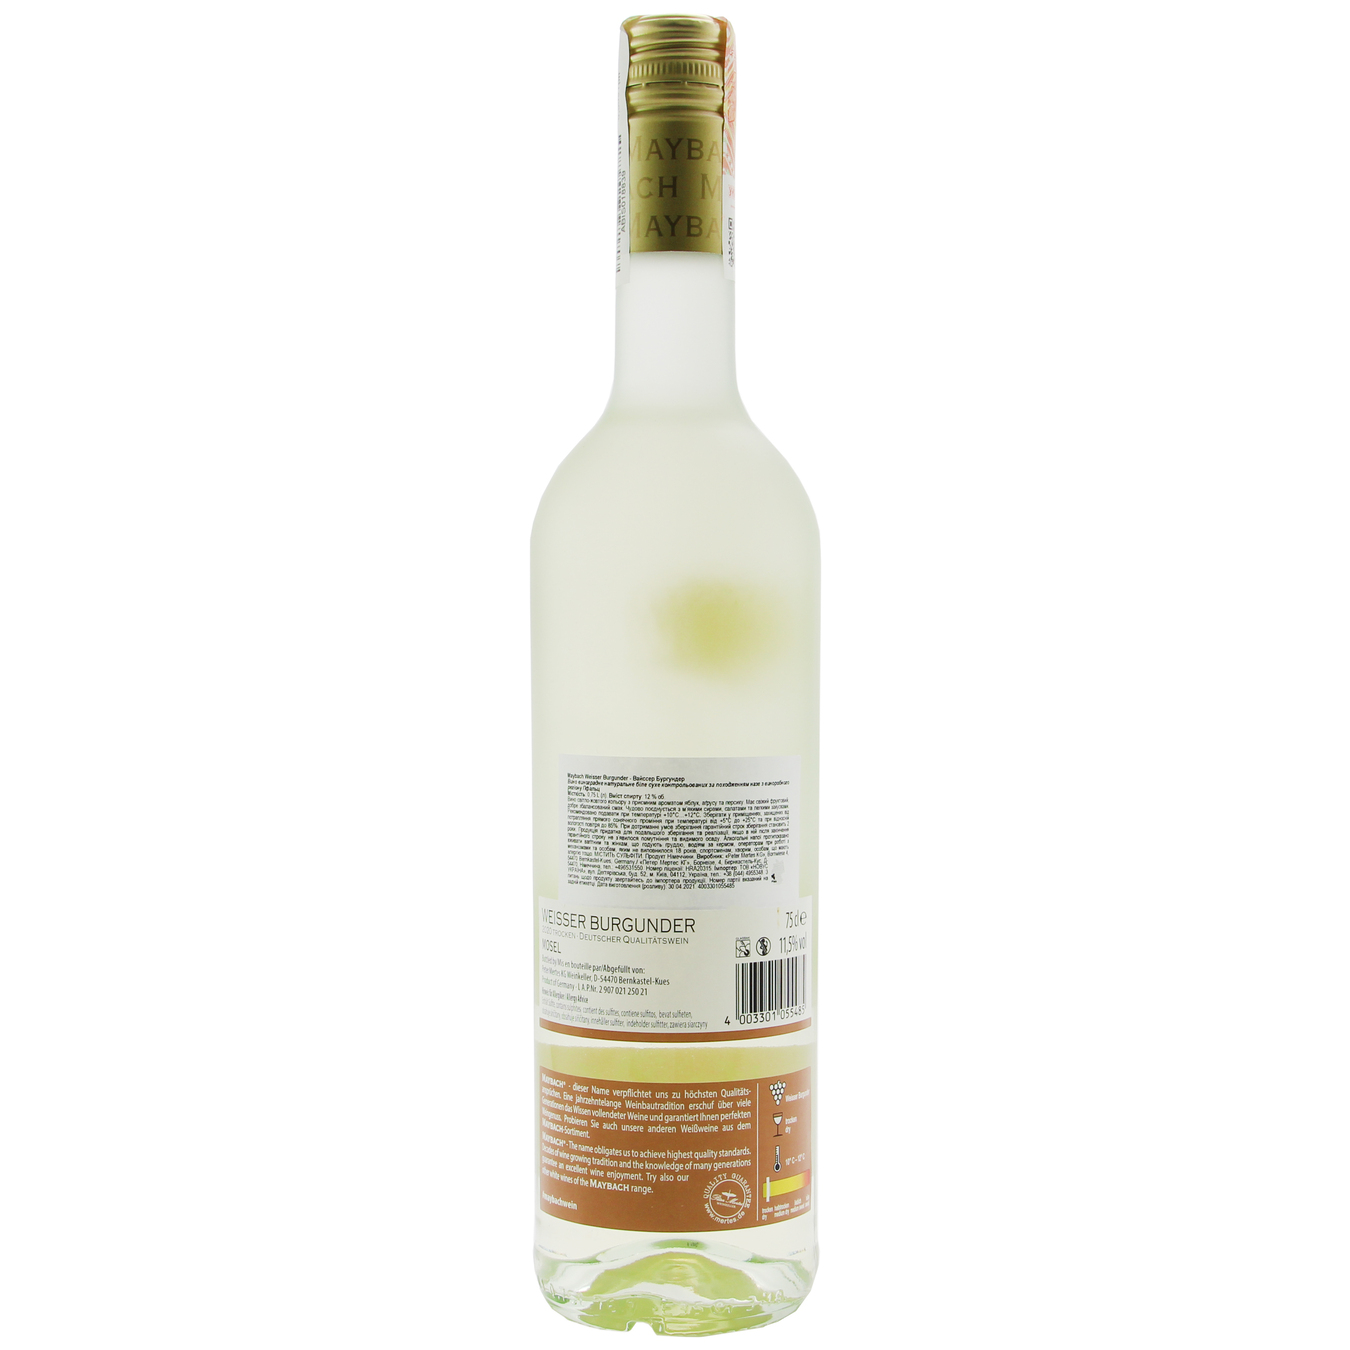 Maybach Weisser Burgunder Trocken white dry wine 12,5% 0,75l 2